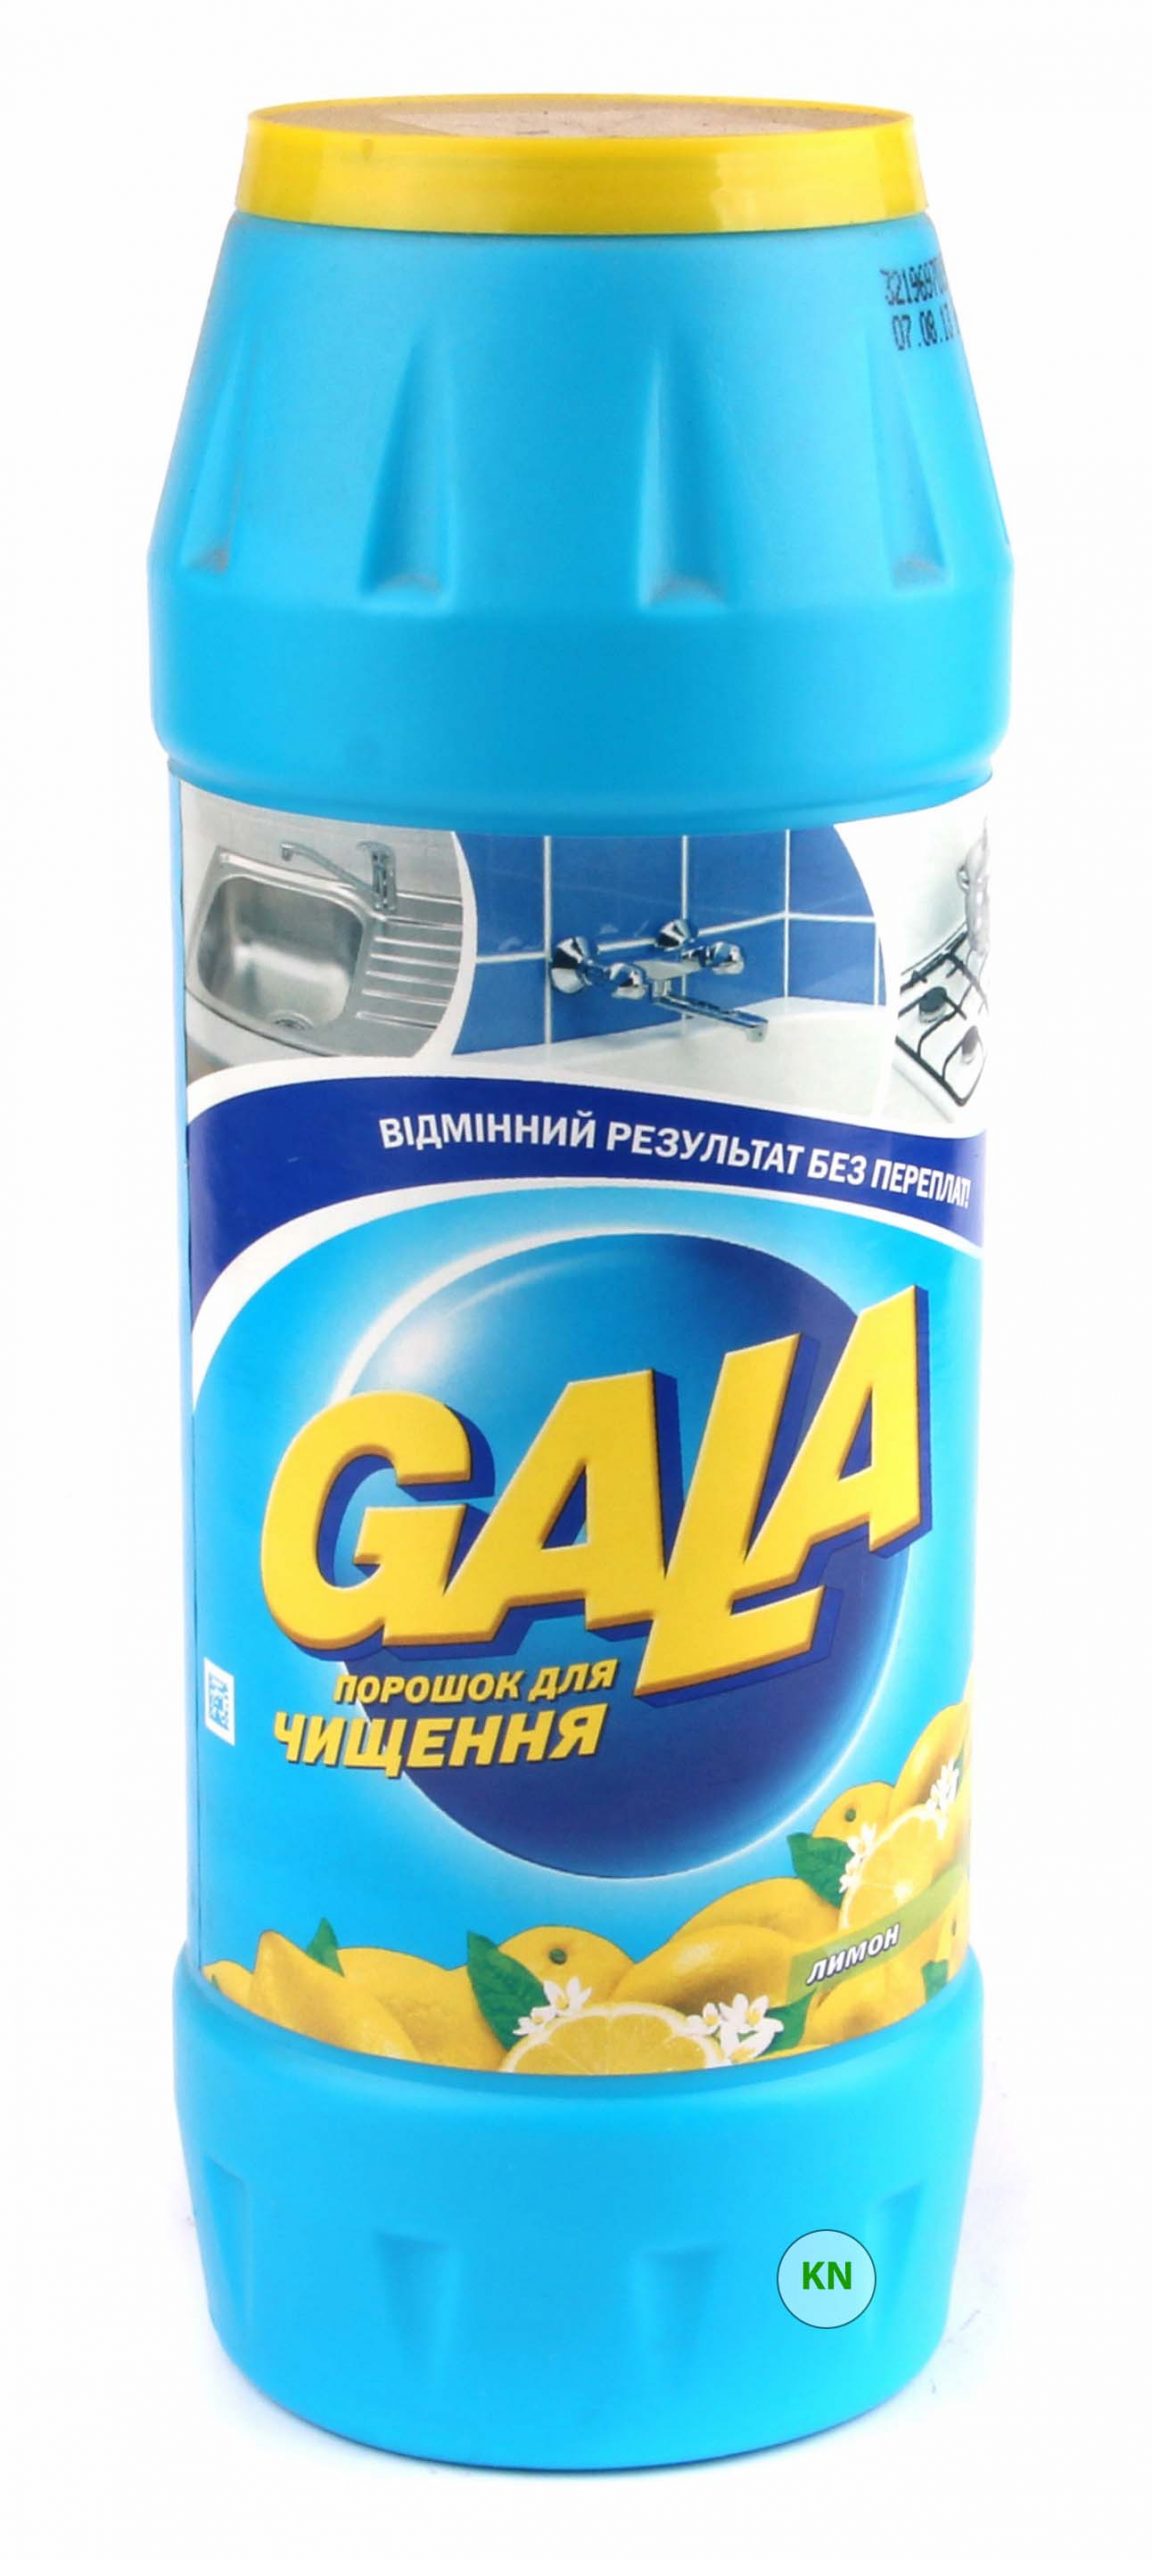 Чистящий порошок "Gala", 500 г